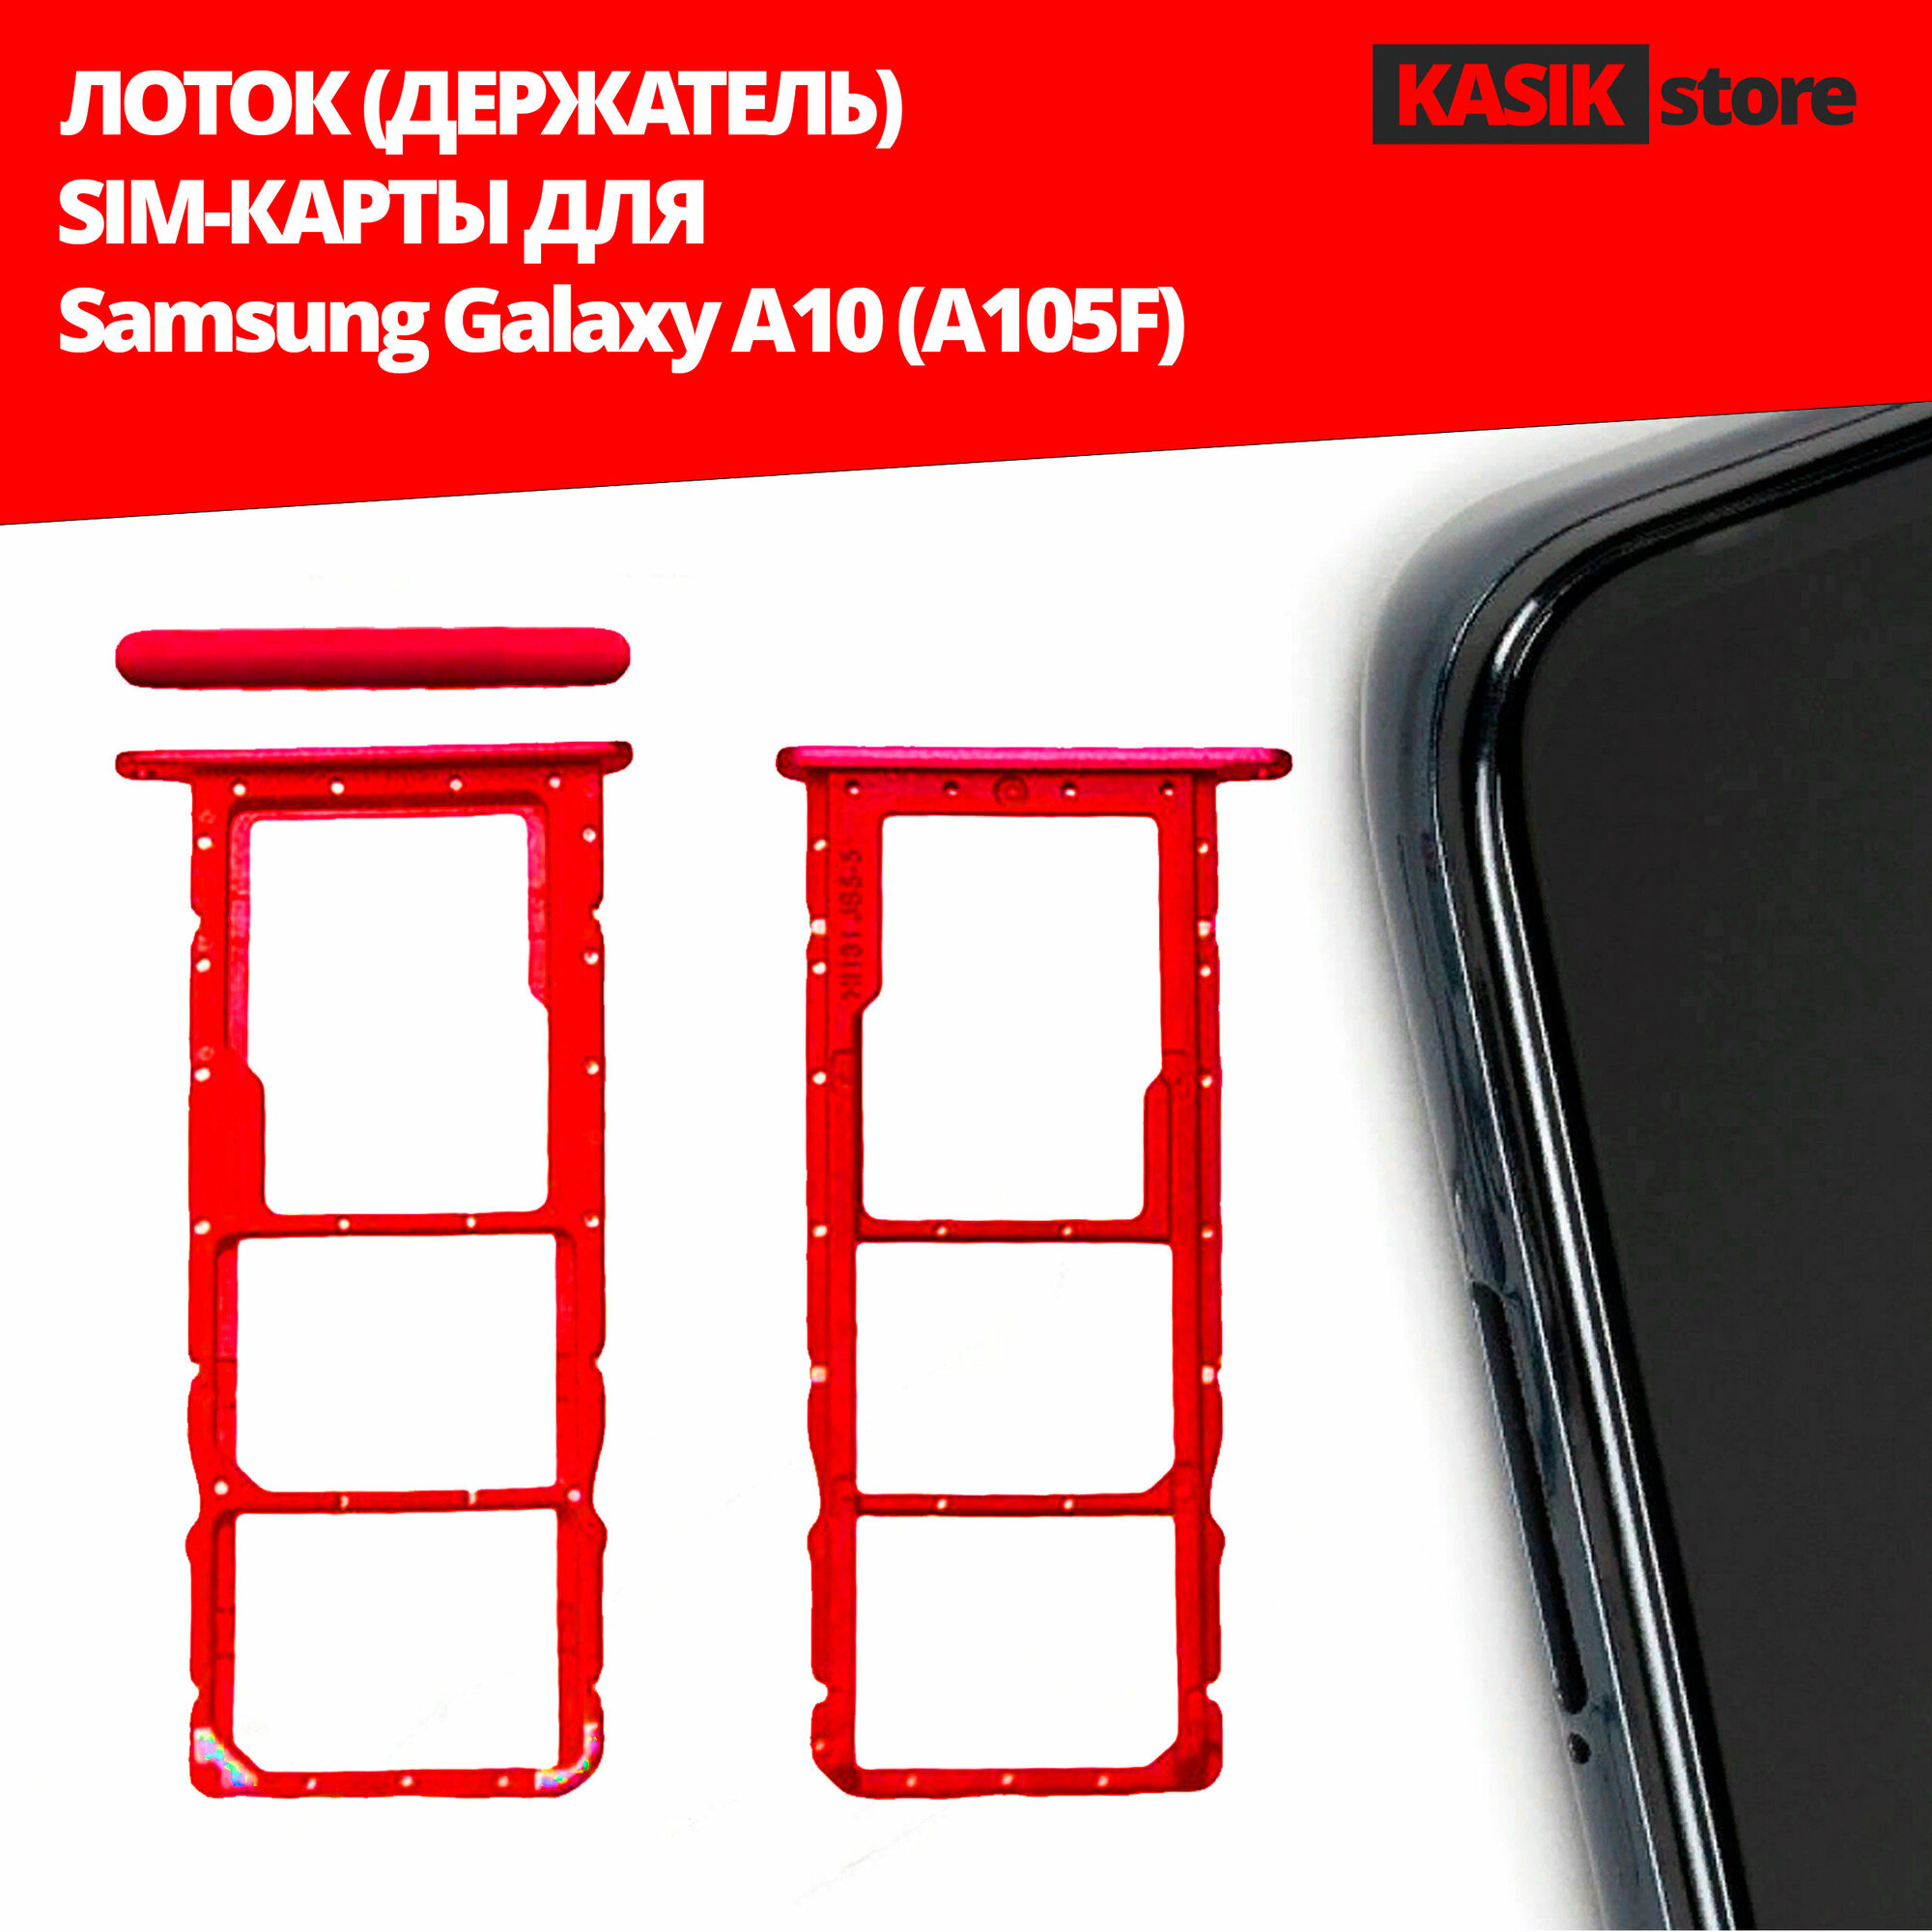 Лоток контейнер (держатель) SIM-карты KASIK Samsung Galaxy A10 (A105F) красный